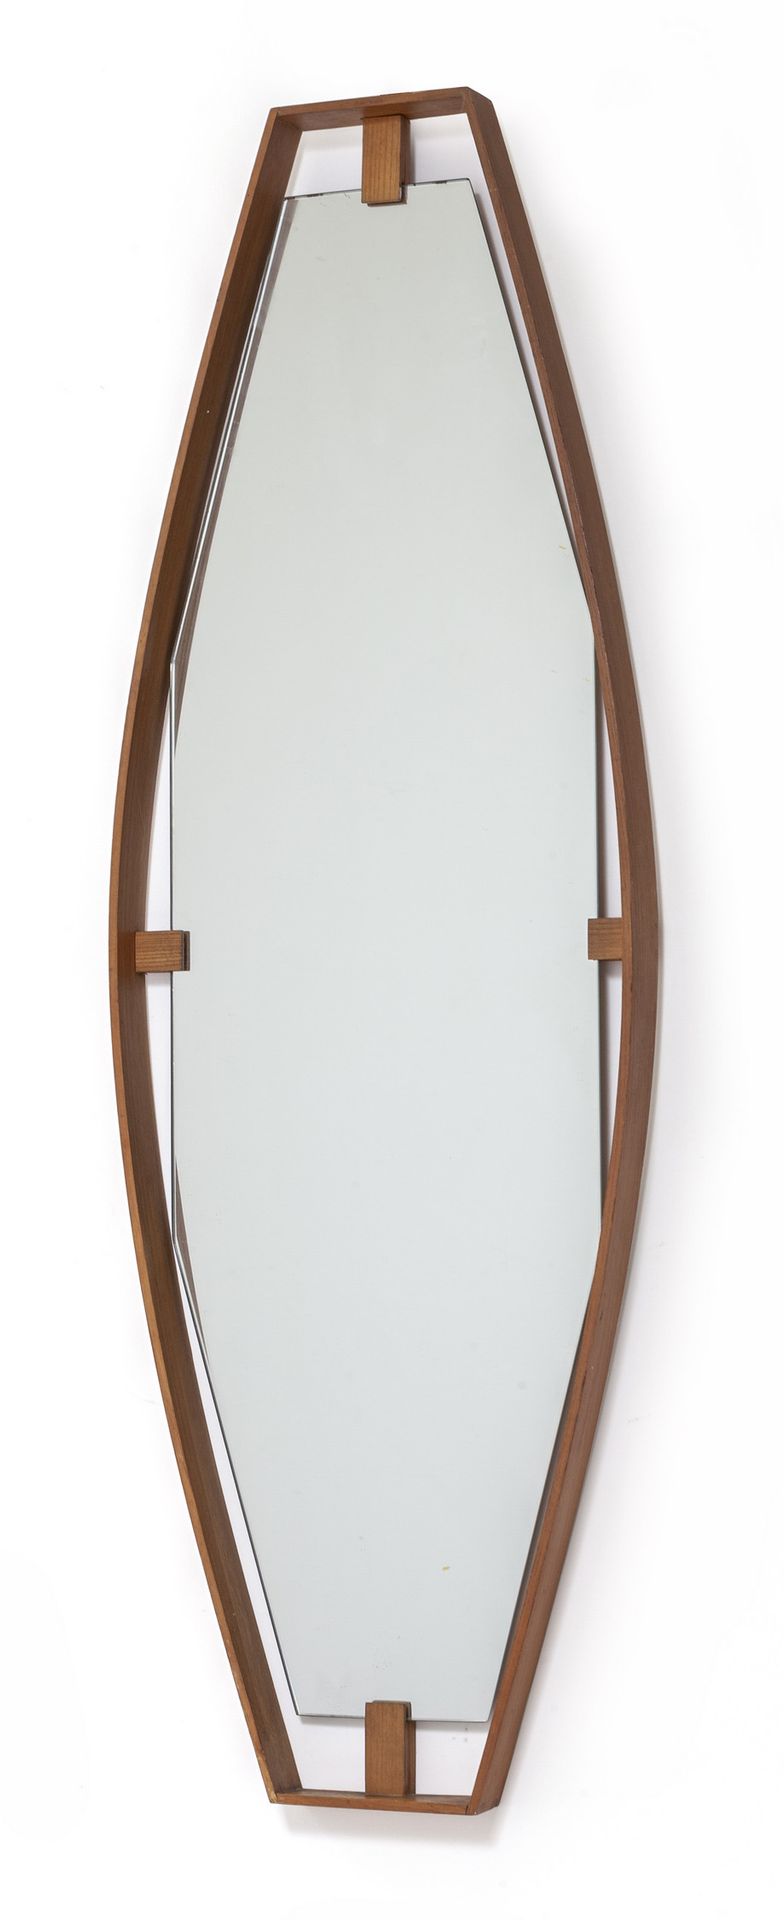 SPECCHIERA 一个60年代的壁镜。
柚木银色水晶。
Cm 100 x 33.